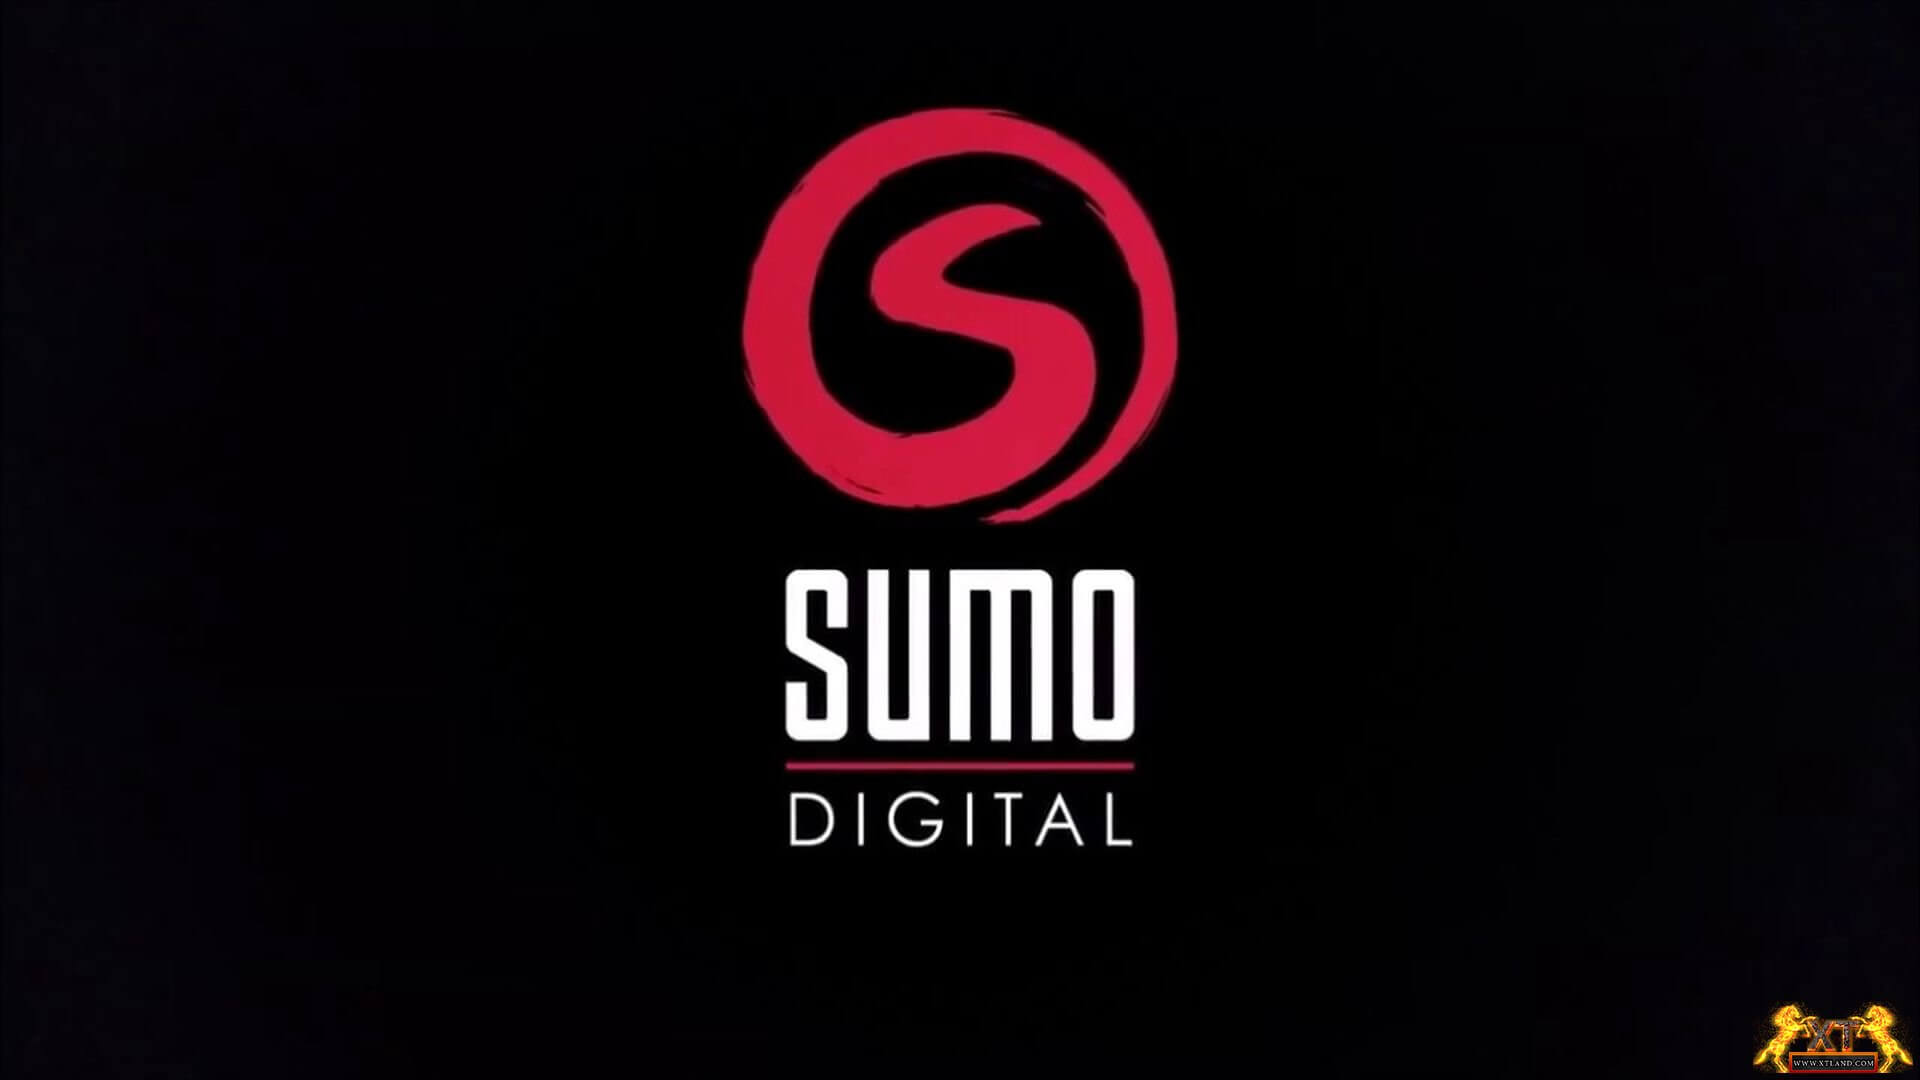 شرکت Tencent استدیو Sumo Digital را با قیمت 1.27 میلیارد دلار خریداری کرد!